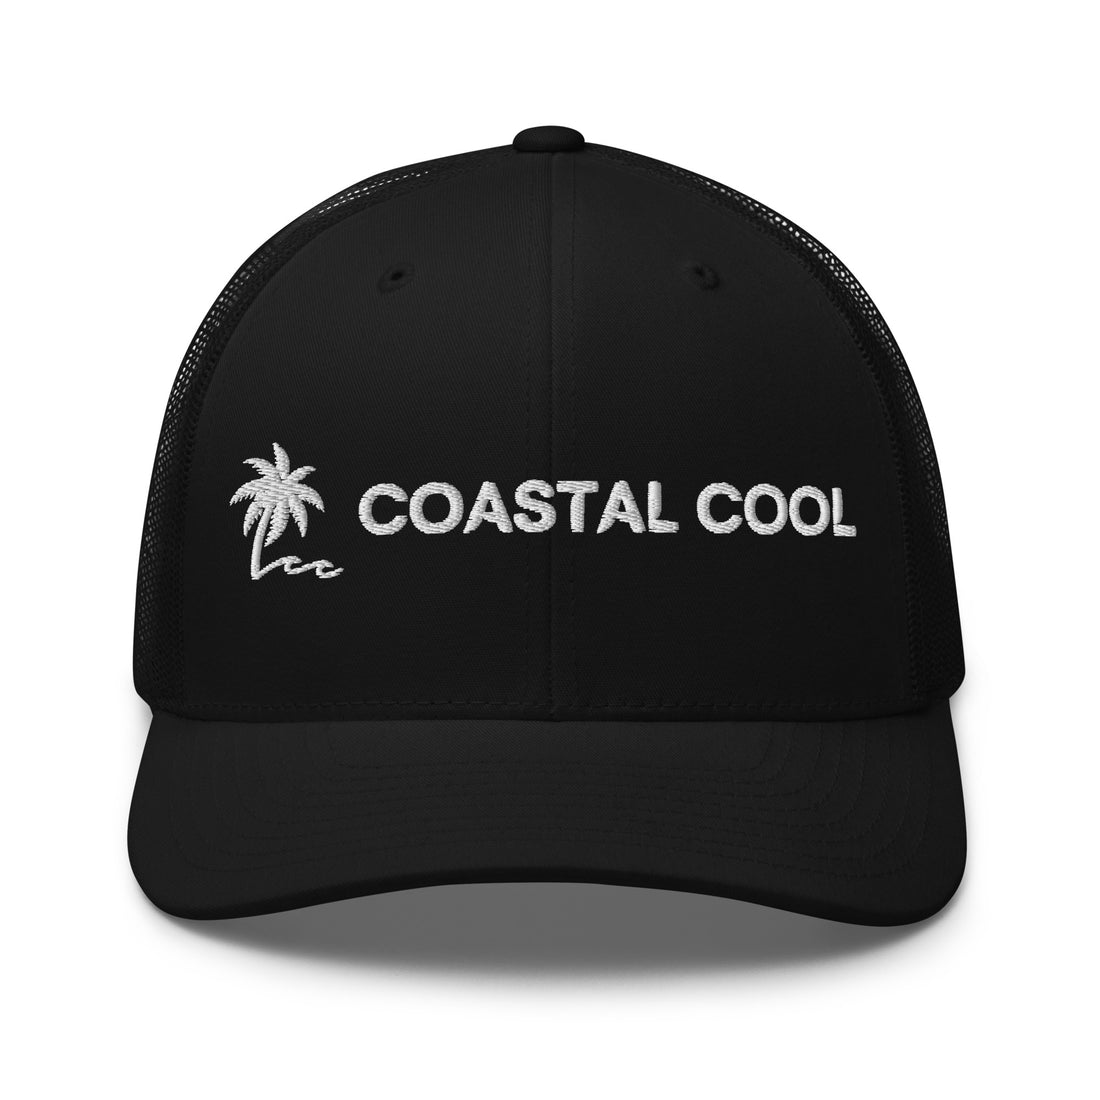 Coastal Cool Trucker Cap - Black-Coastal Cool